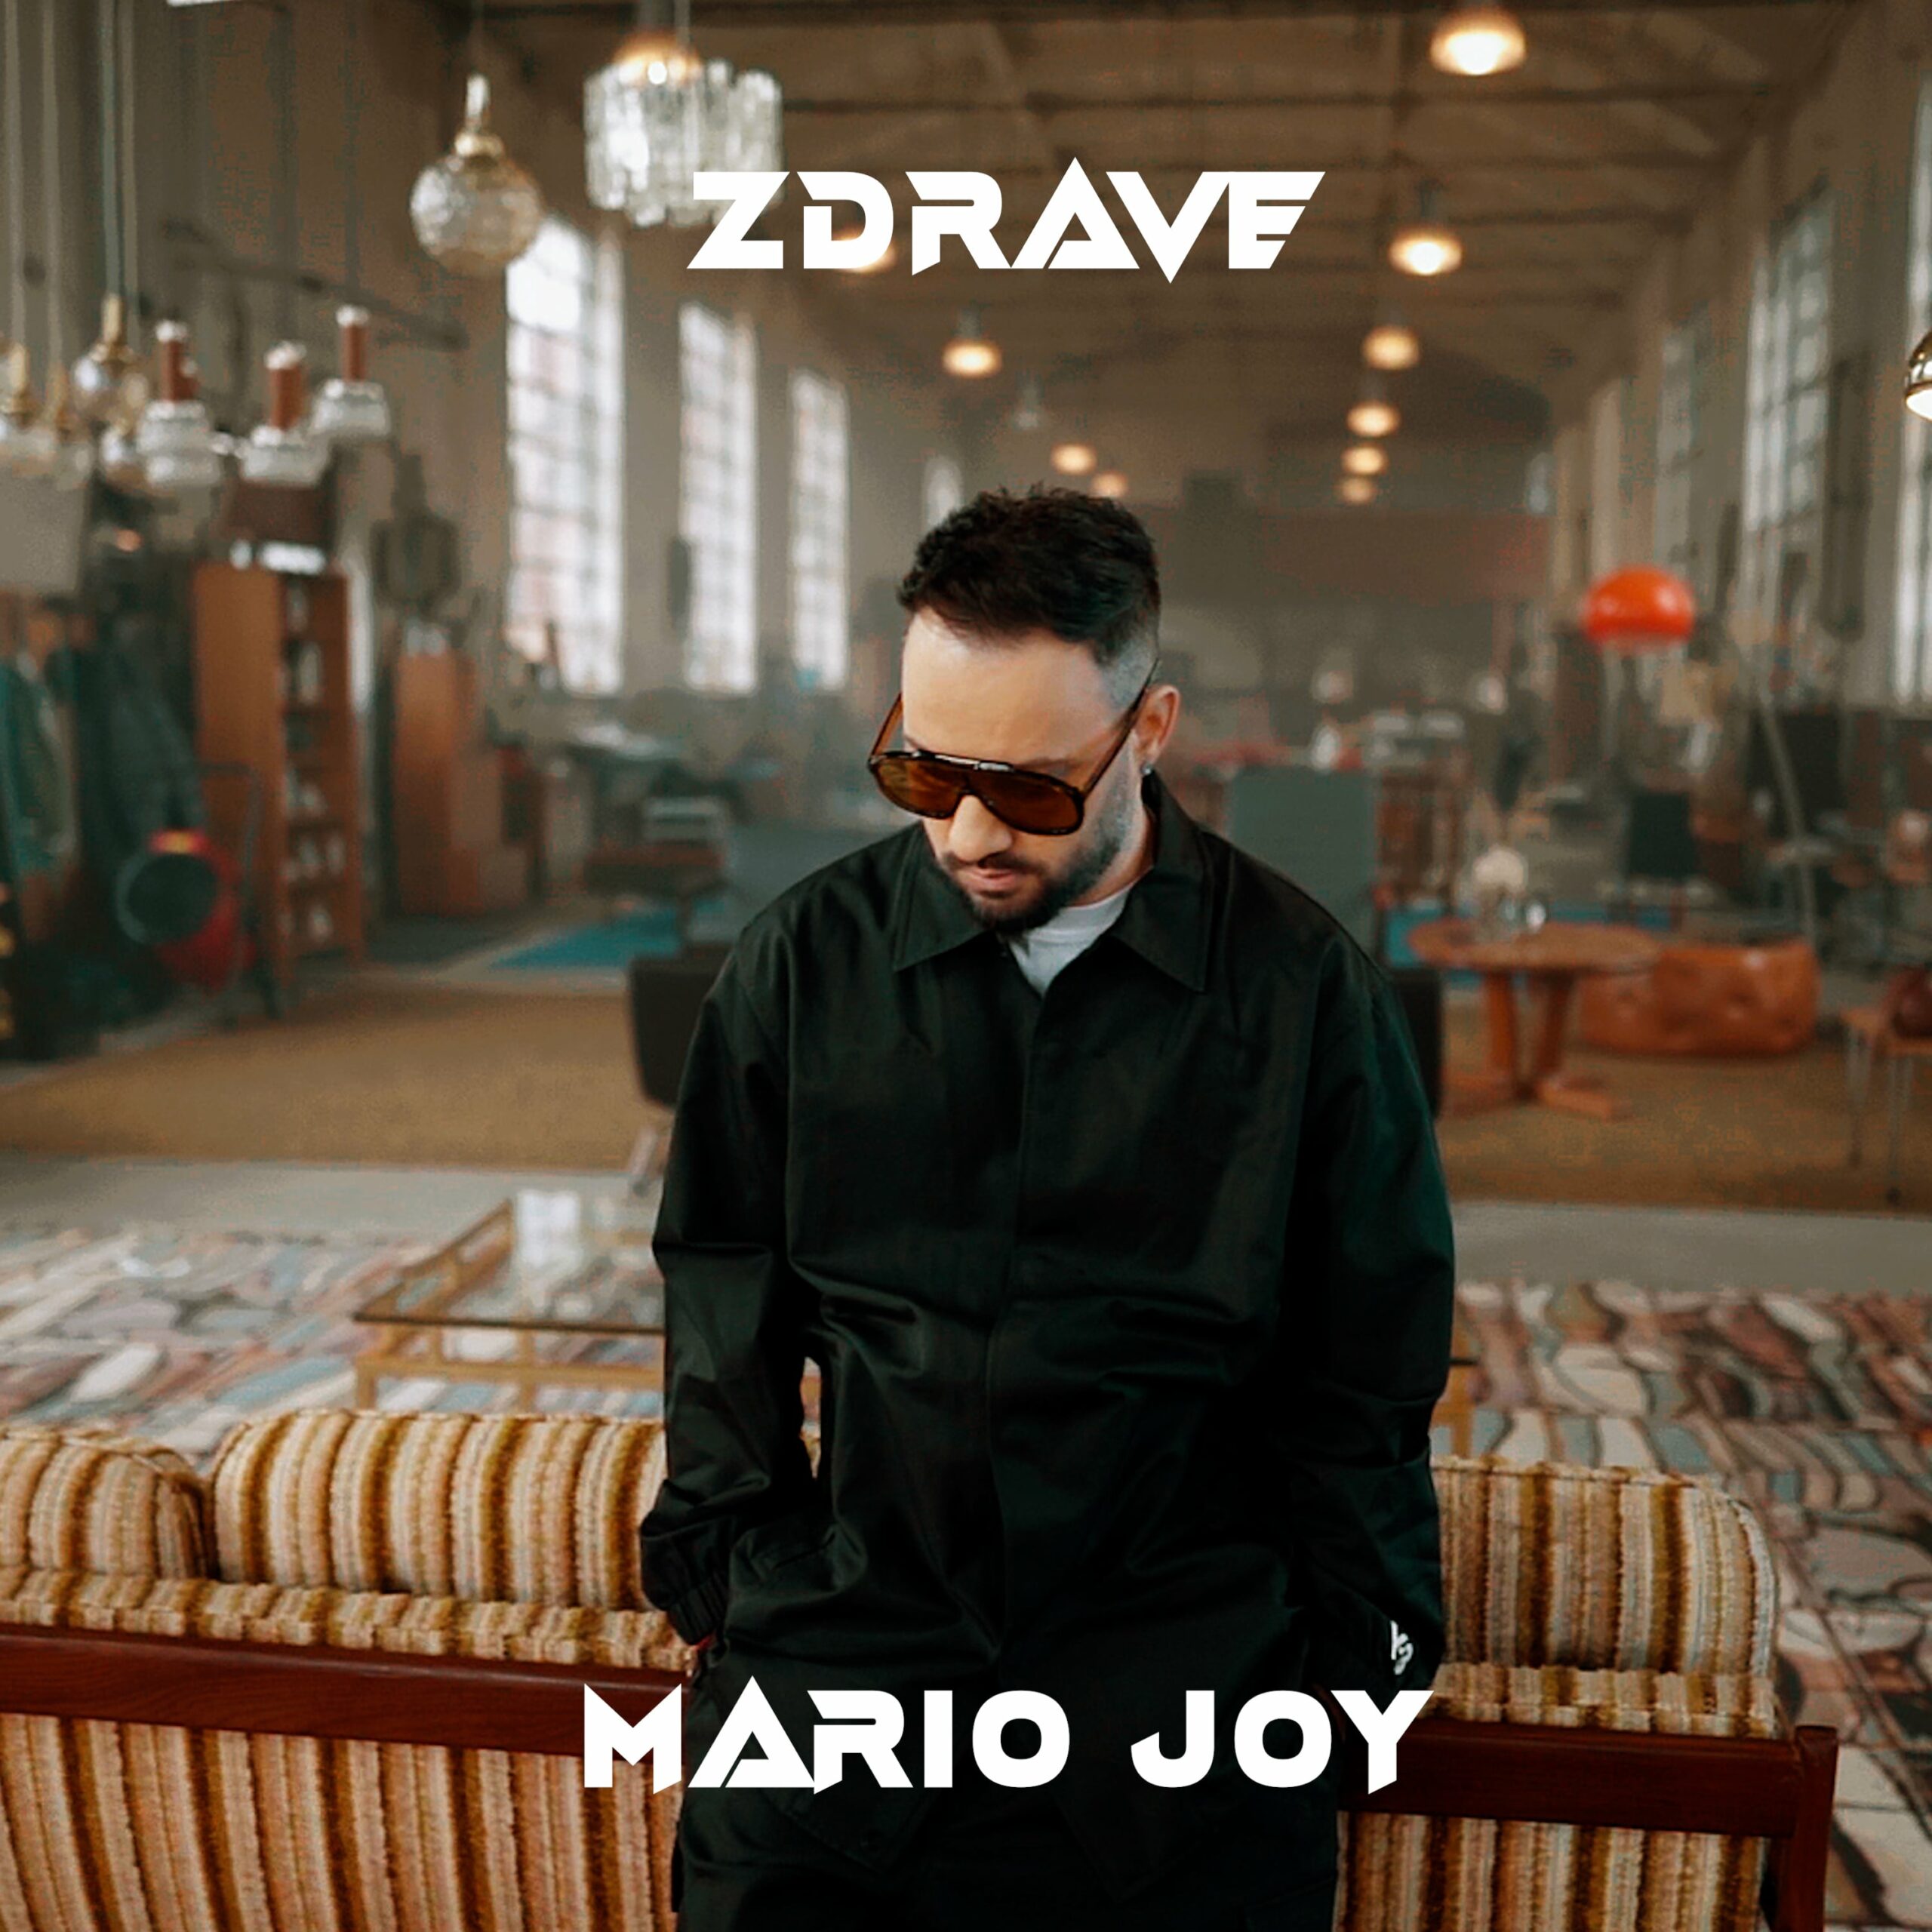 #premieră. Zdrave, noul videoclip al lui Mario Joy se vede în exclusivitate pe zutv.ro